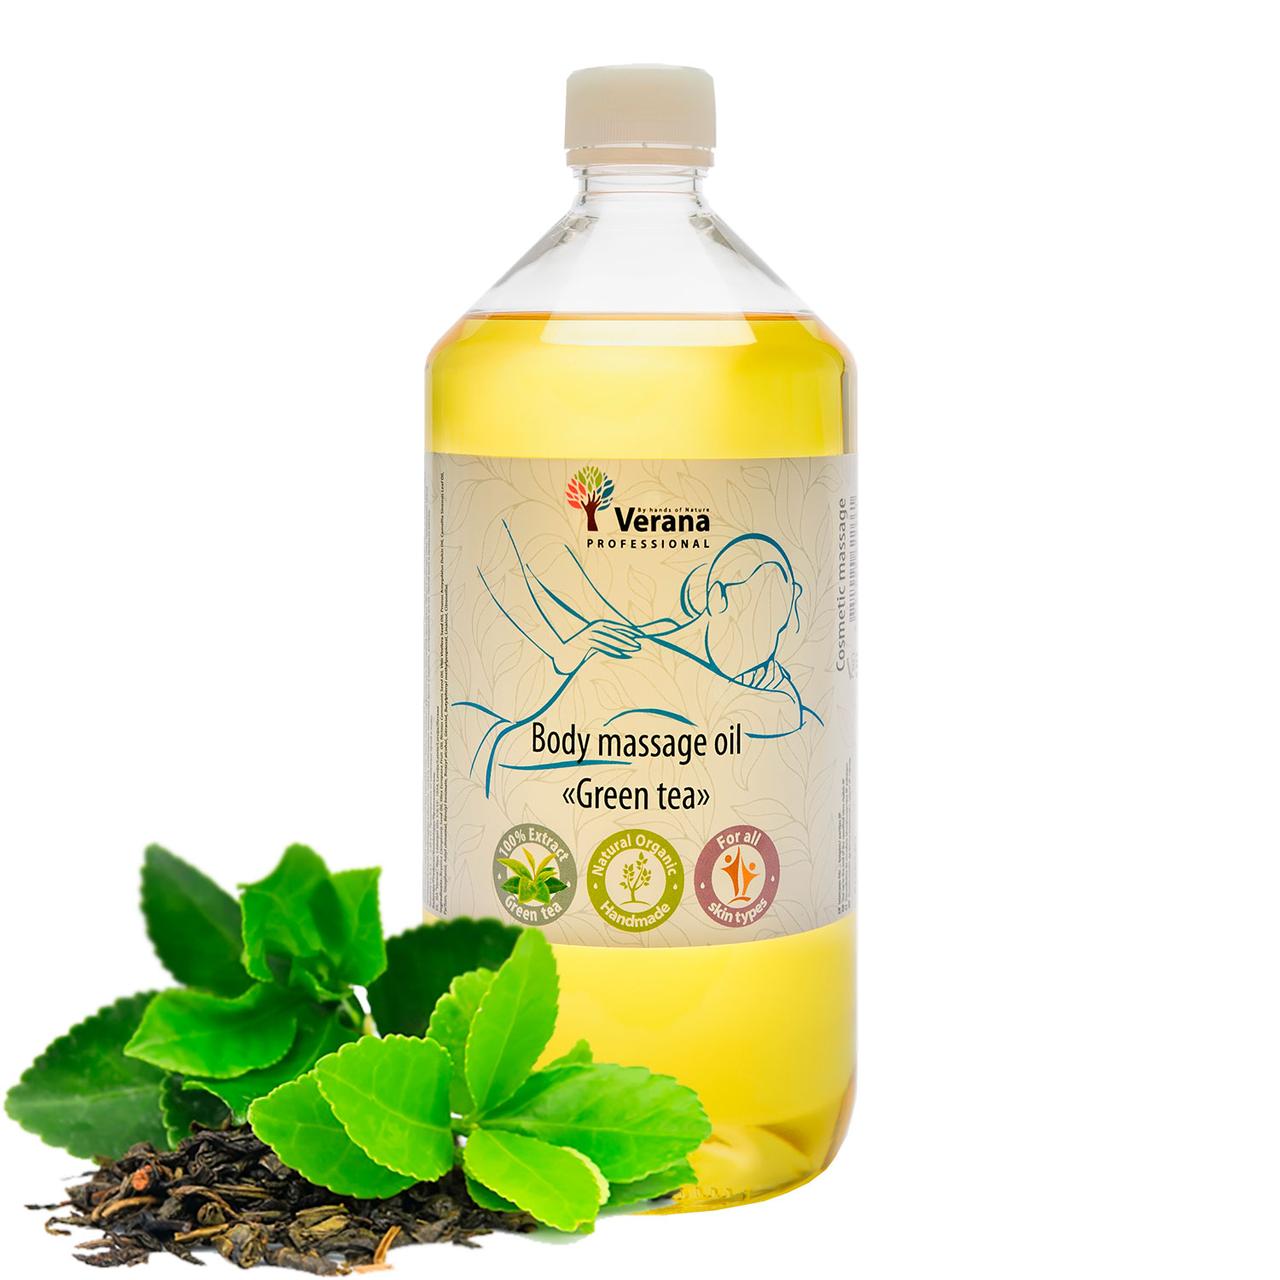 Массажное масло для тела «Зелёный чай» от Verana Professional, 1 литр